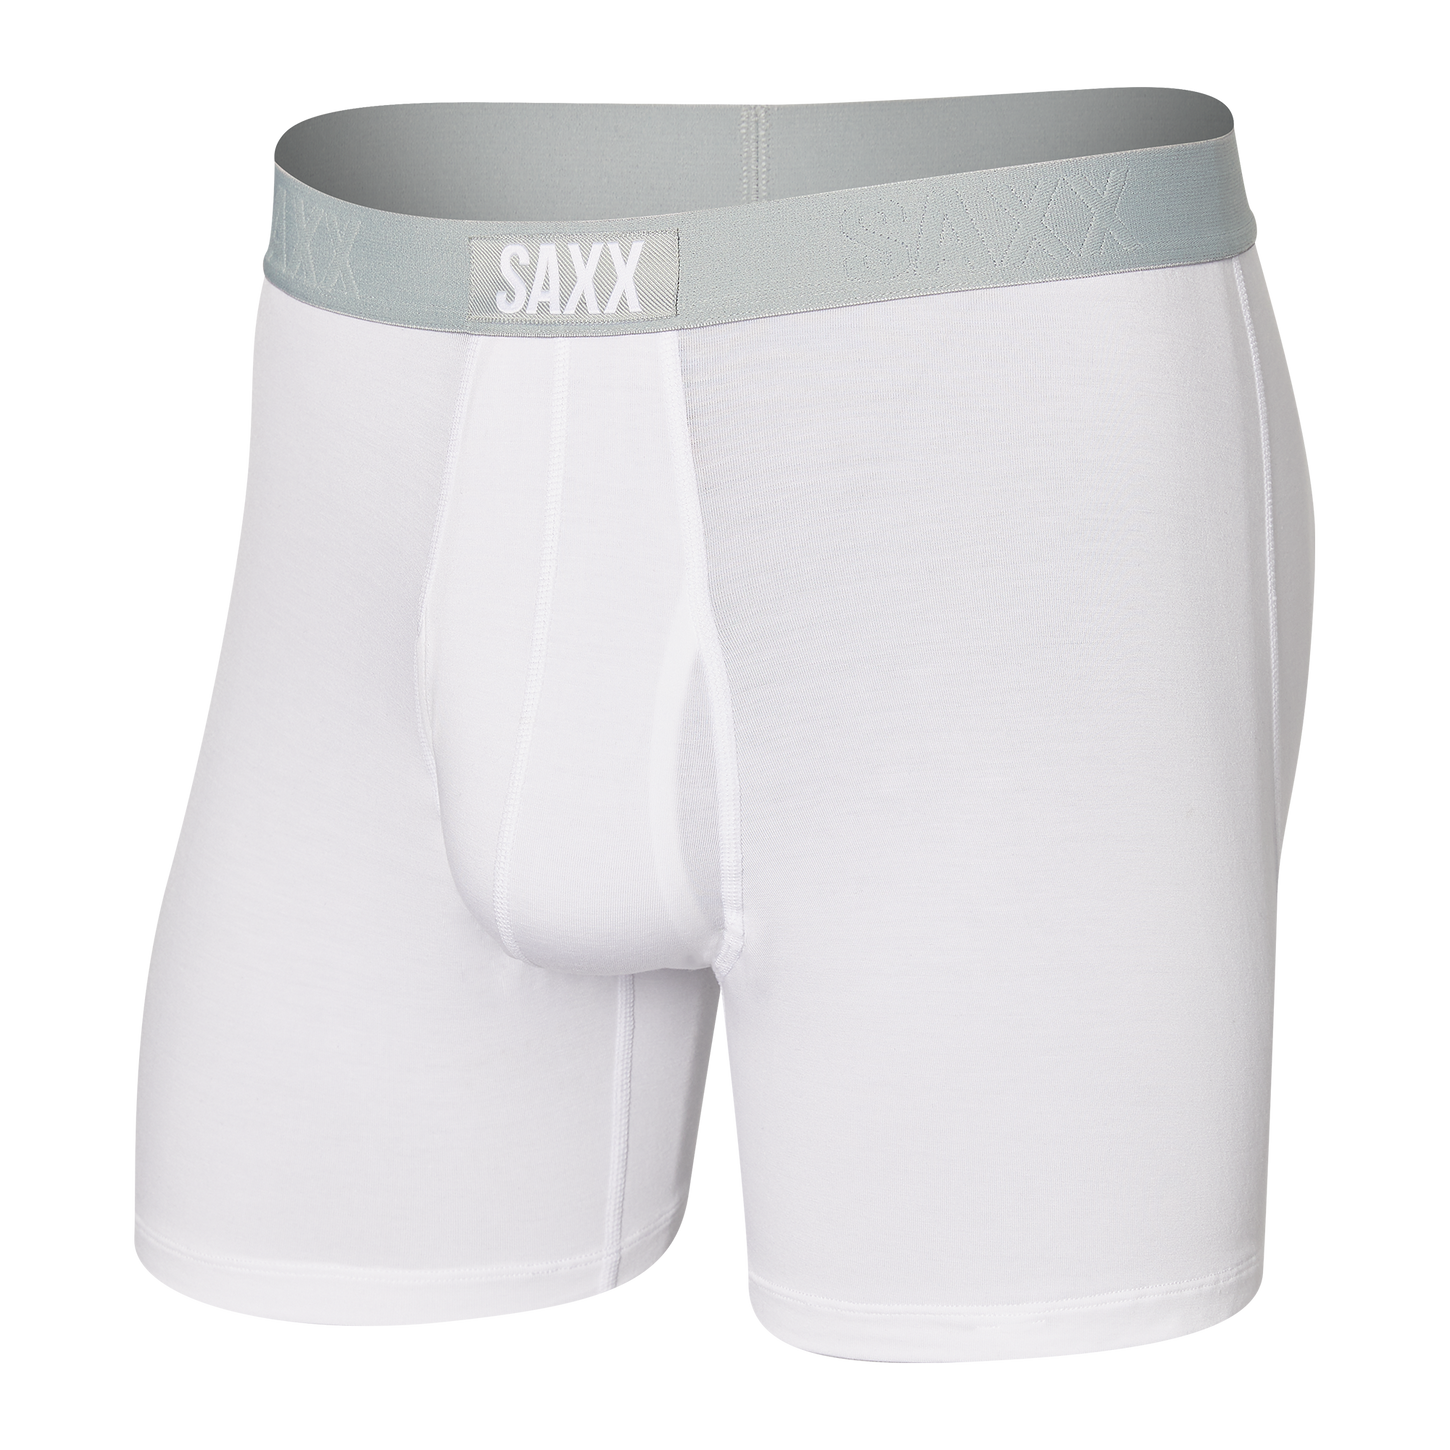 Saxx Men's Ultra Boxer Brief Apparel SAXX White Small 